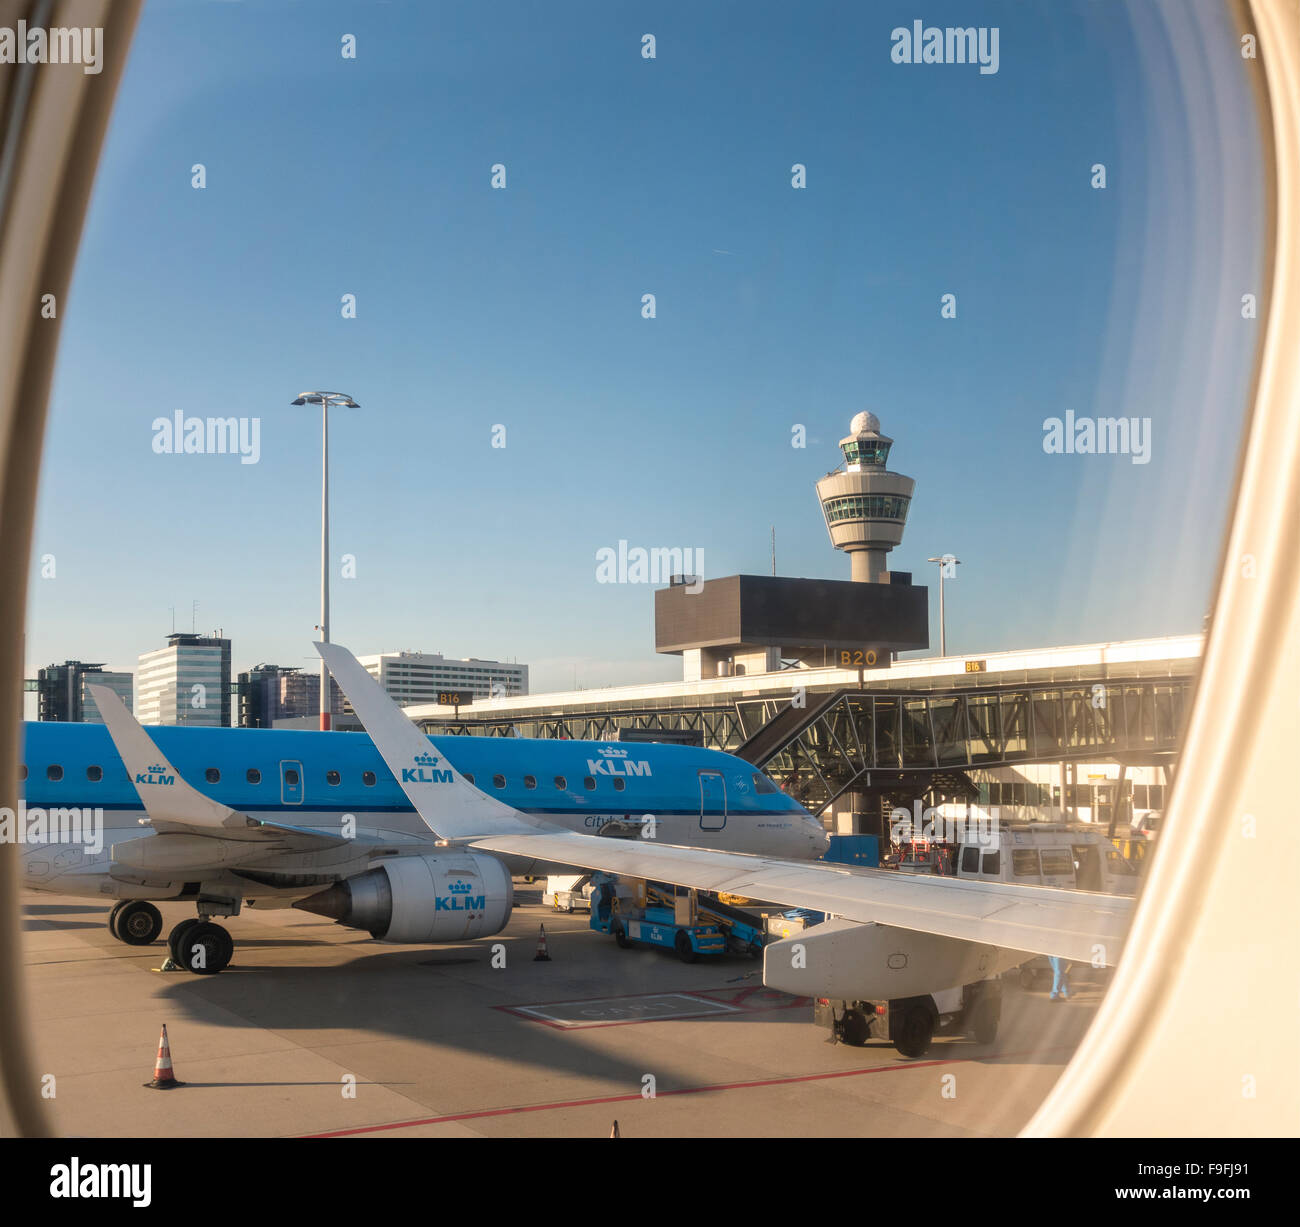 El aeropuerto de Schiphol con KLM cityhopper PH-EZO avión Embraer E-190 en la puerta y la torre de control. Vista desde la ventana de su asiento Foto de stock